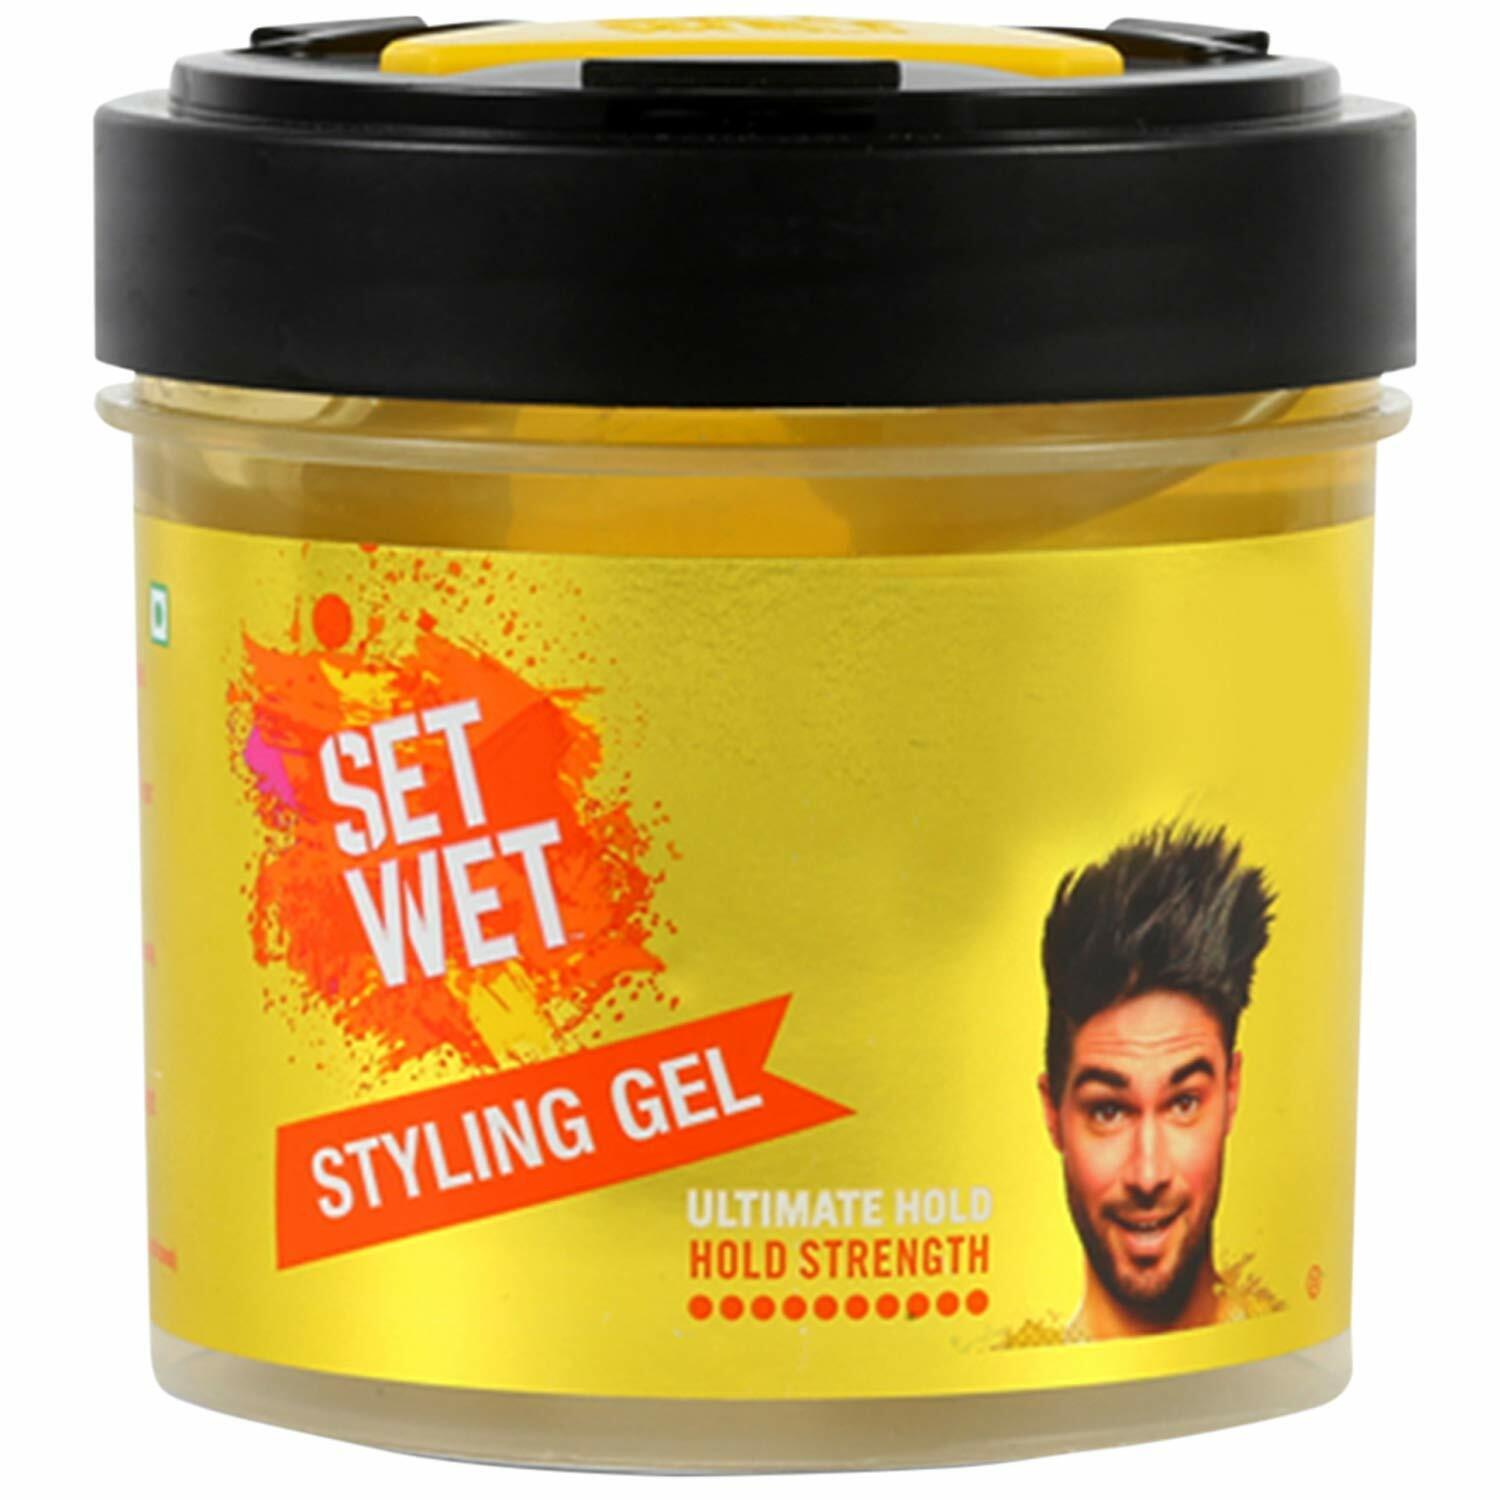 Set Wet Hair Gel Ultimate Hold, 250ml | eBay